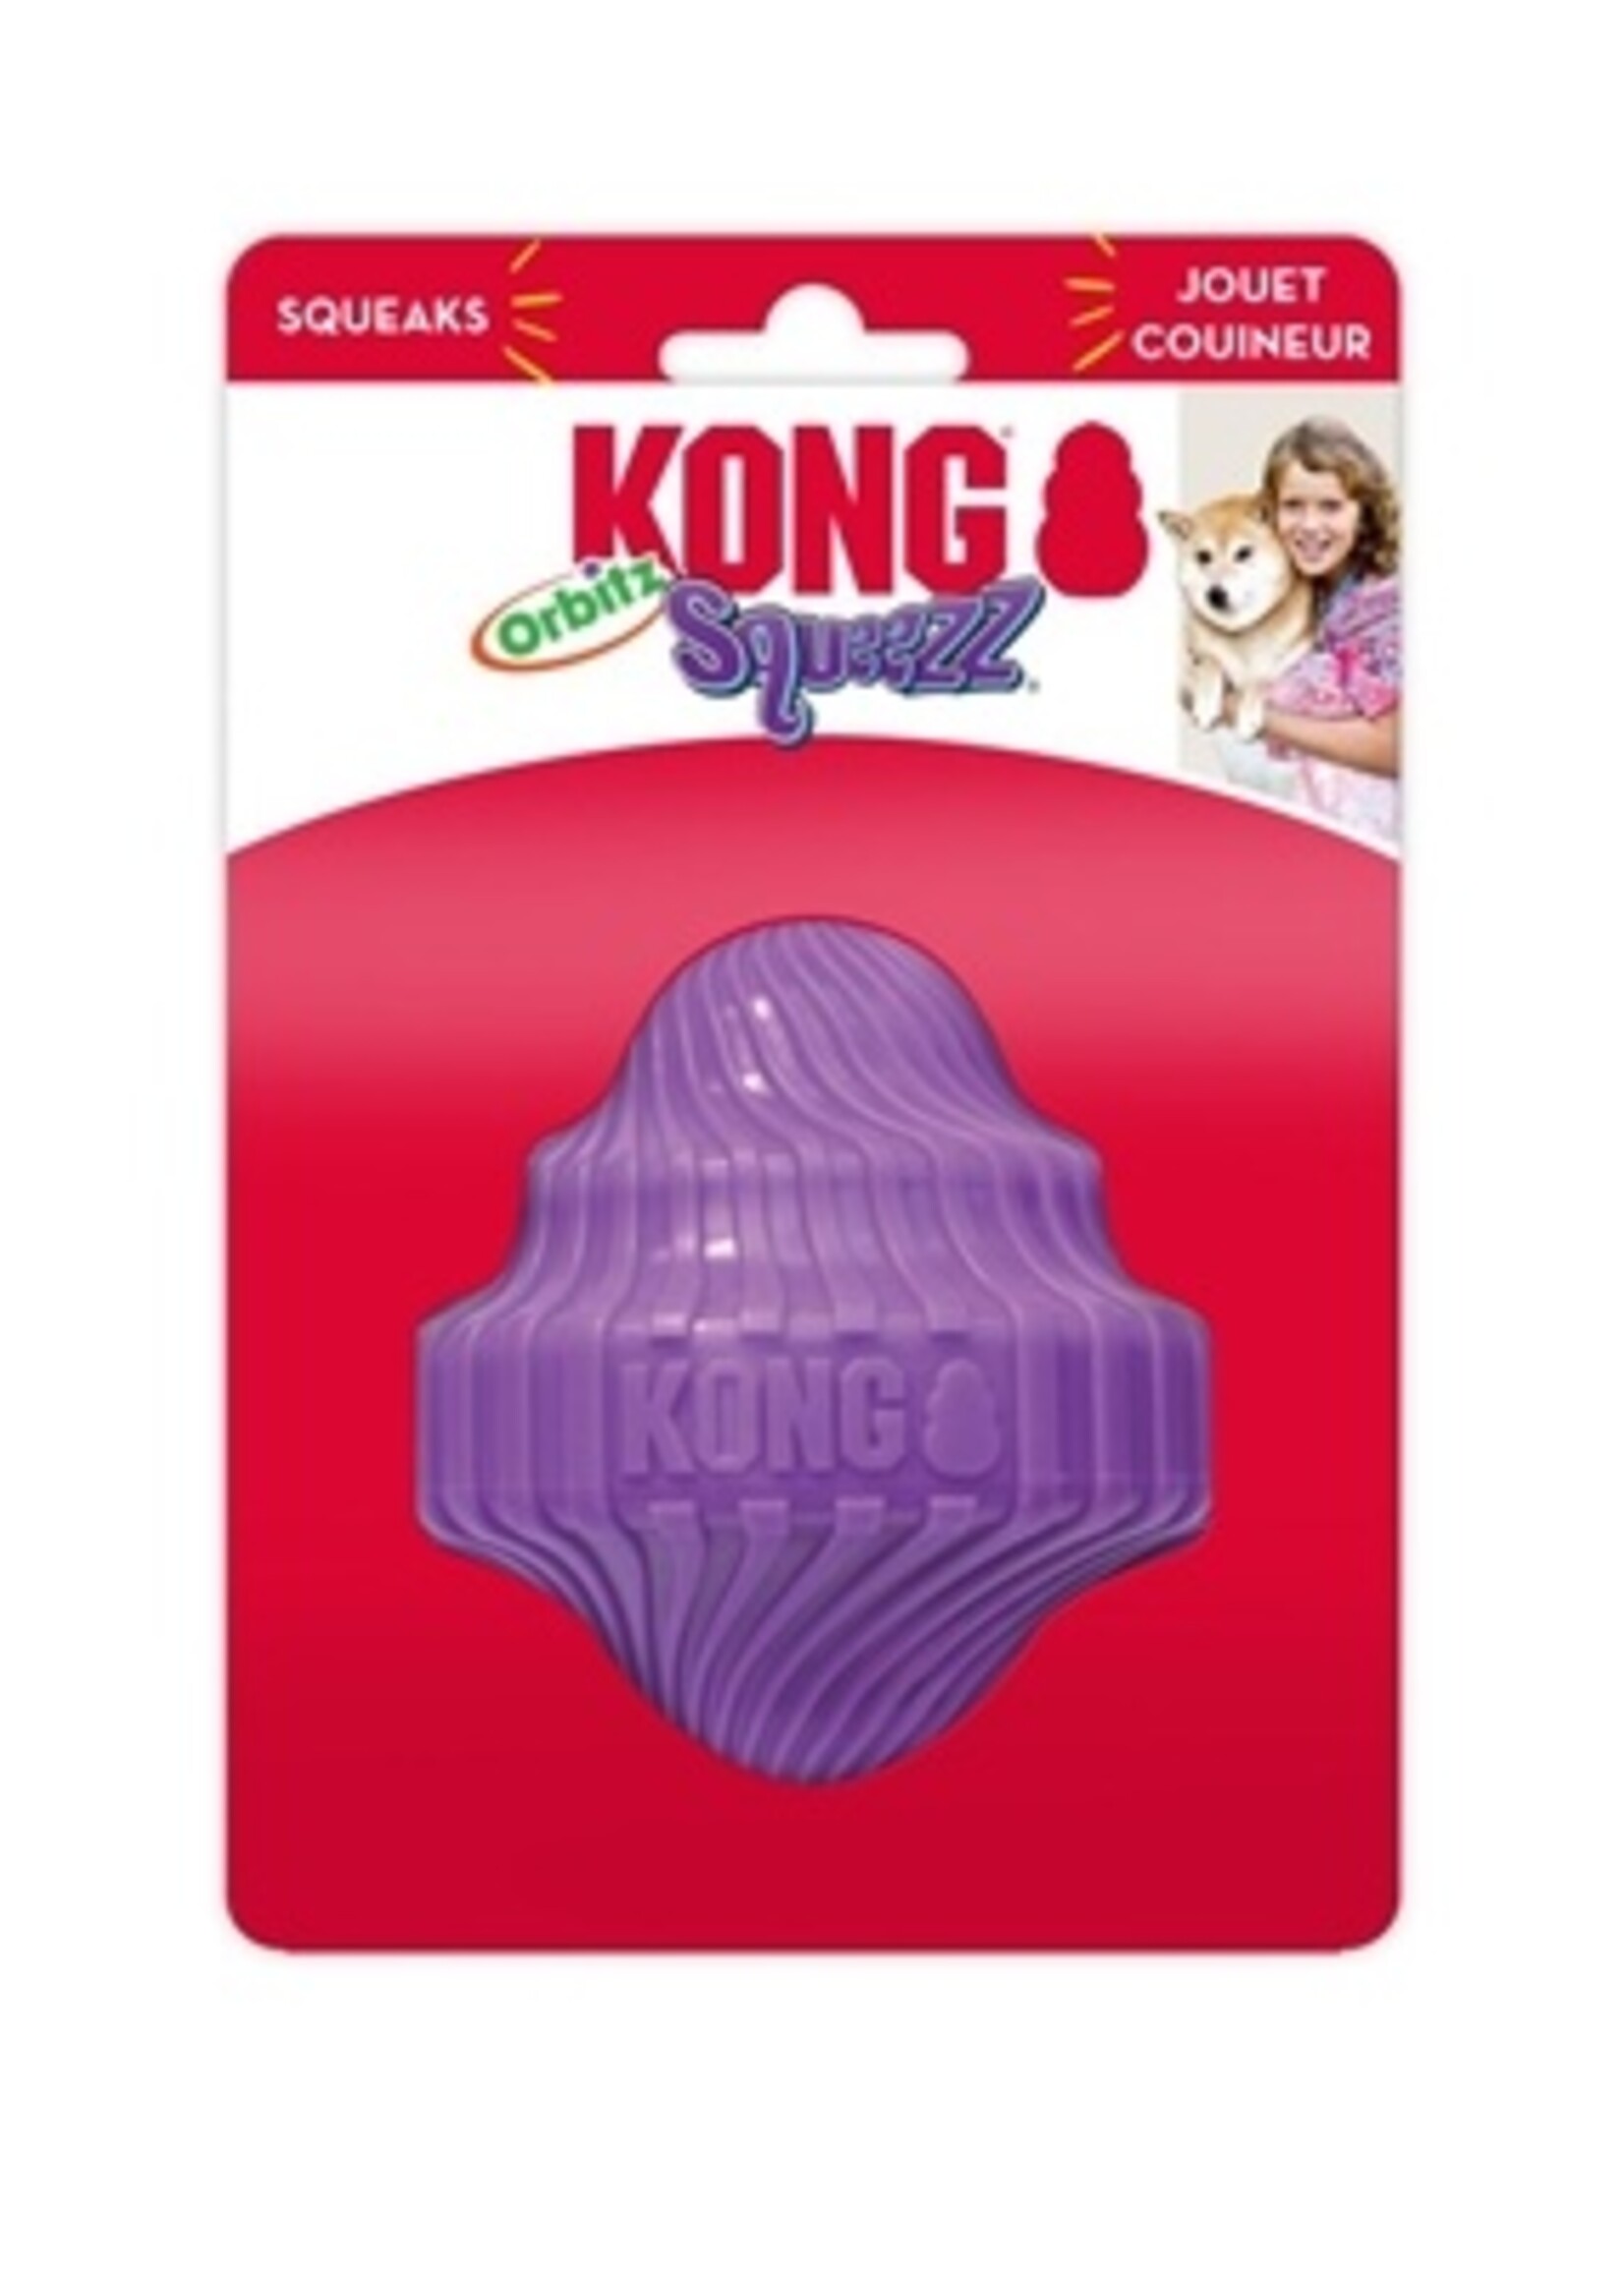 Kong Kong squeezz orbitz spin top assorti